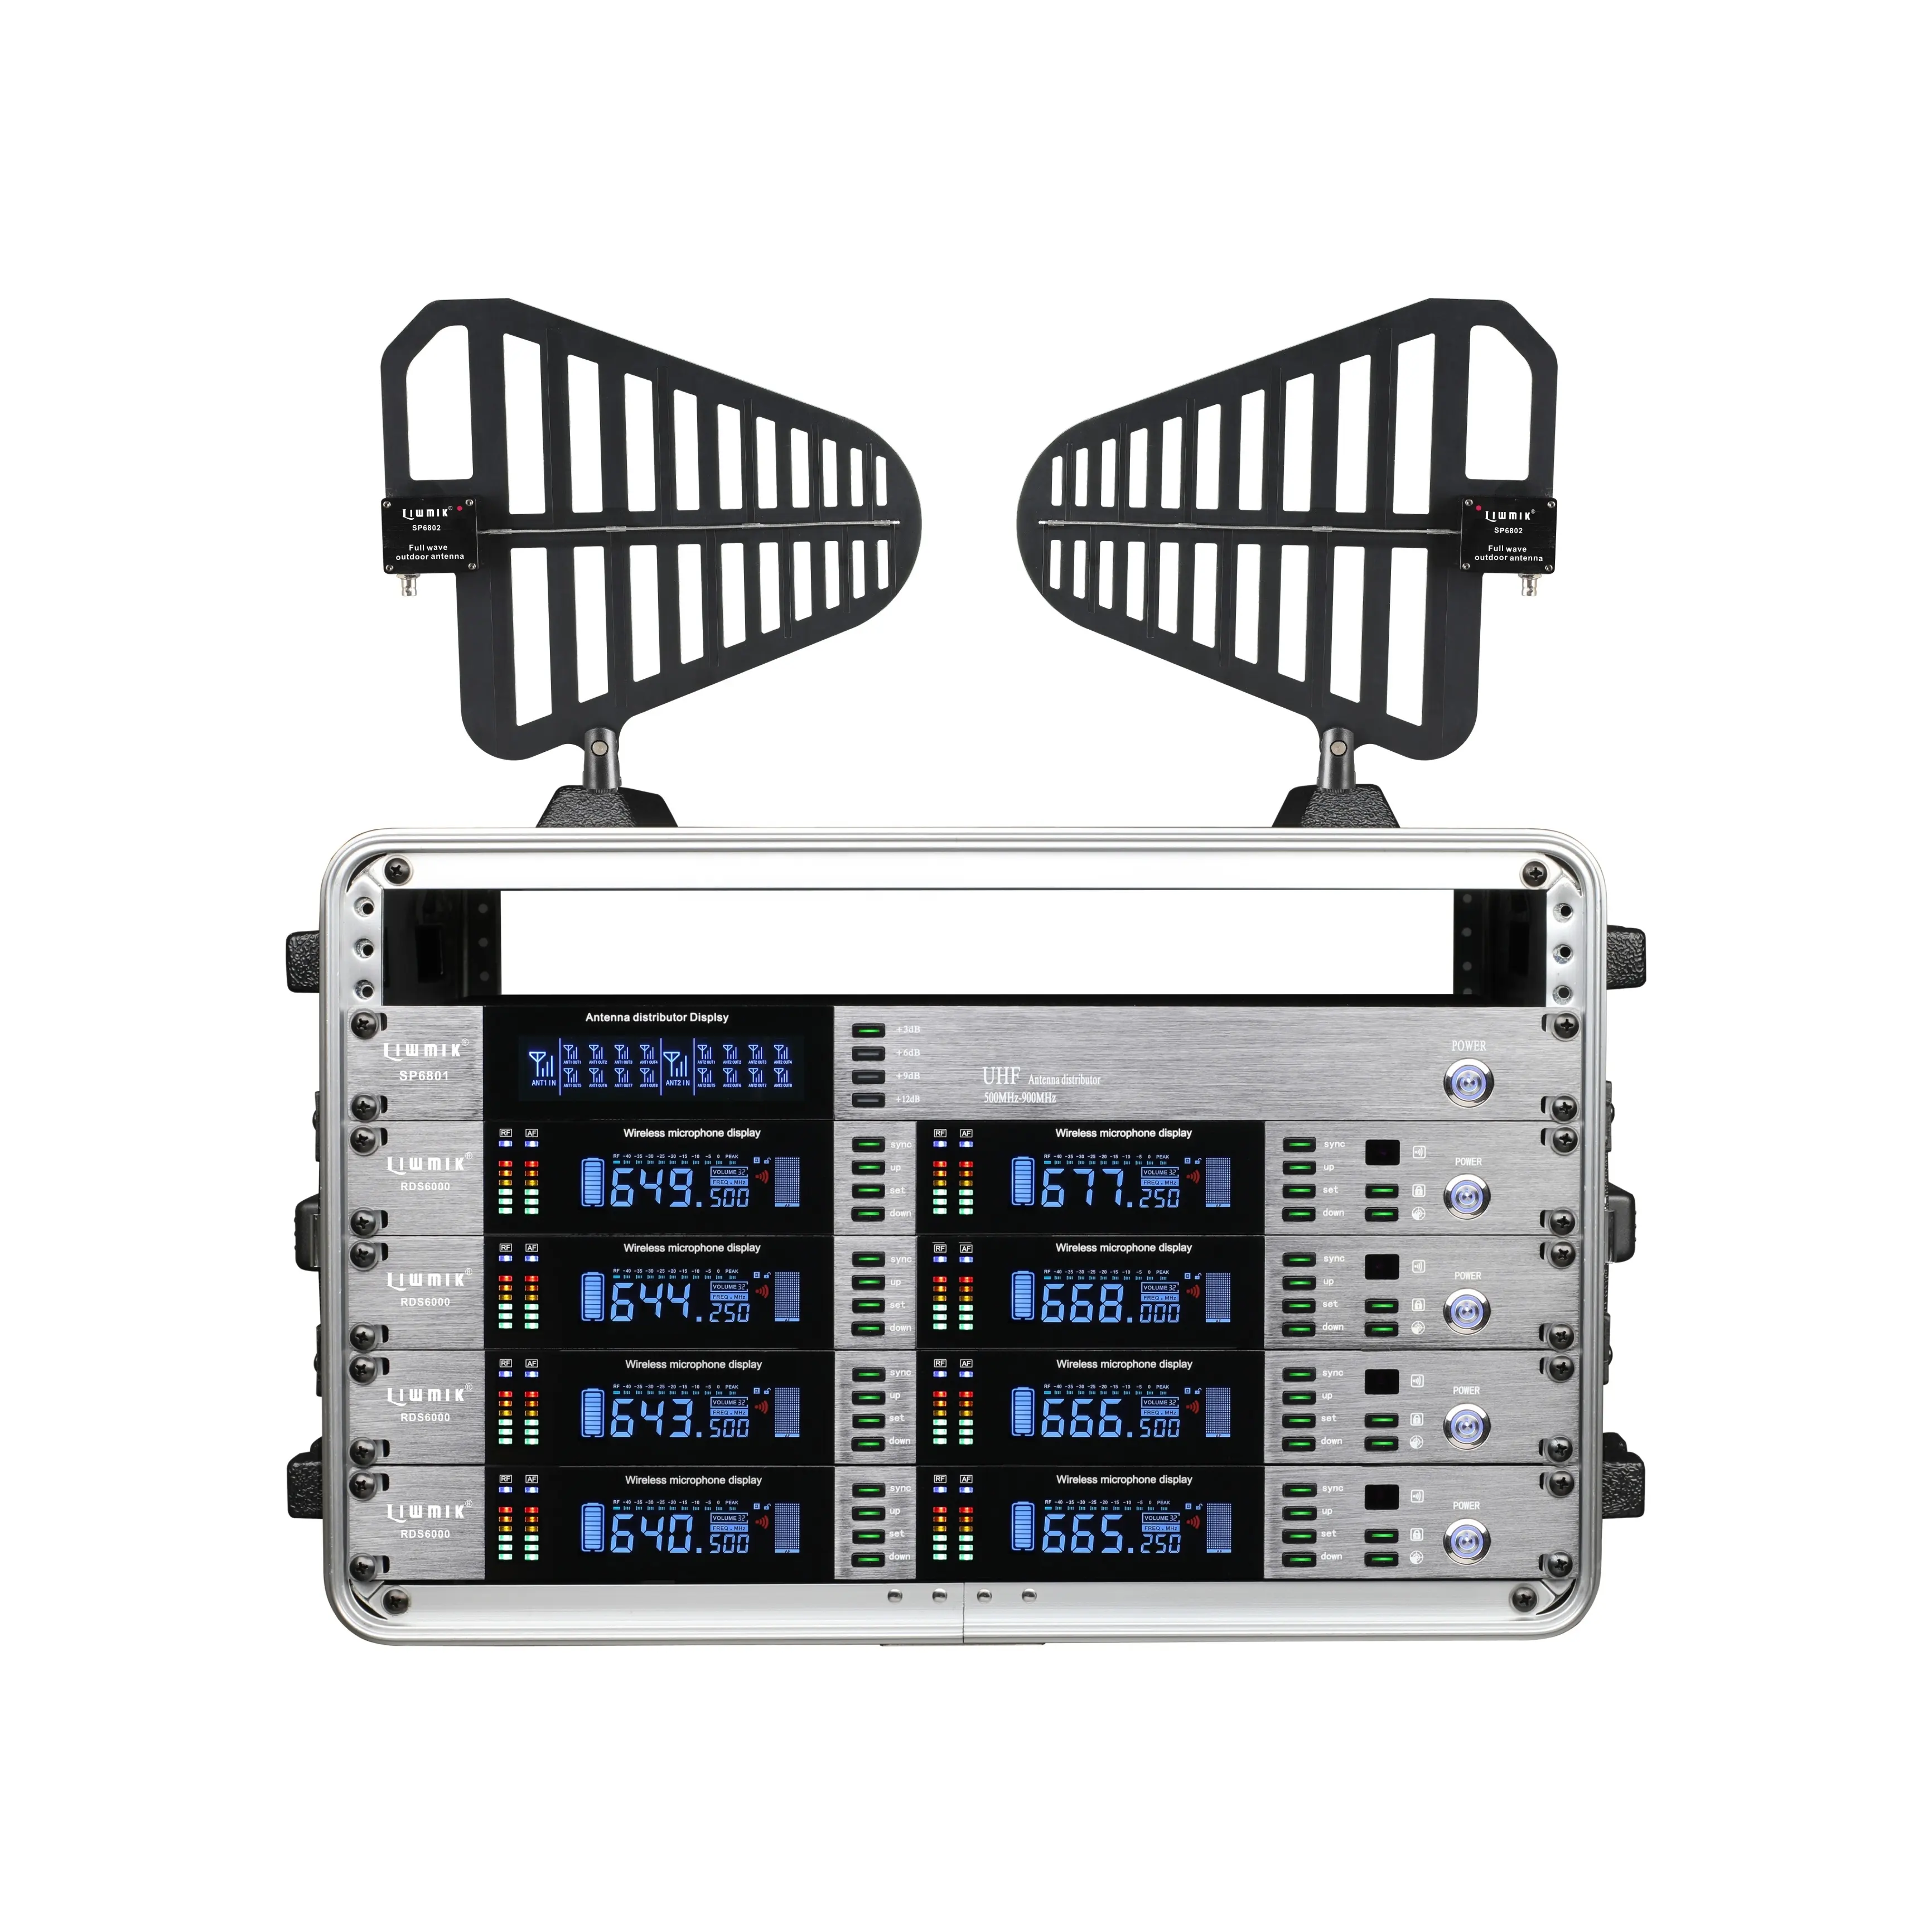 Haut de gamme SPT6801 meilleur professionnel UHF 16 voies antenne amplificateur distributeur, séparateur, diviseur pour les systèmes de microphone sans fil